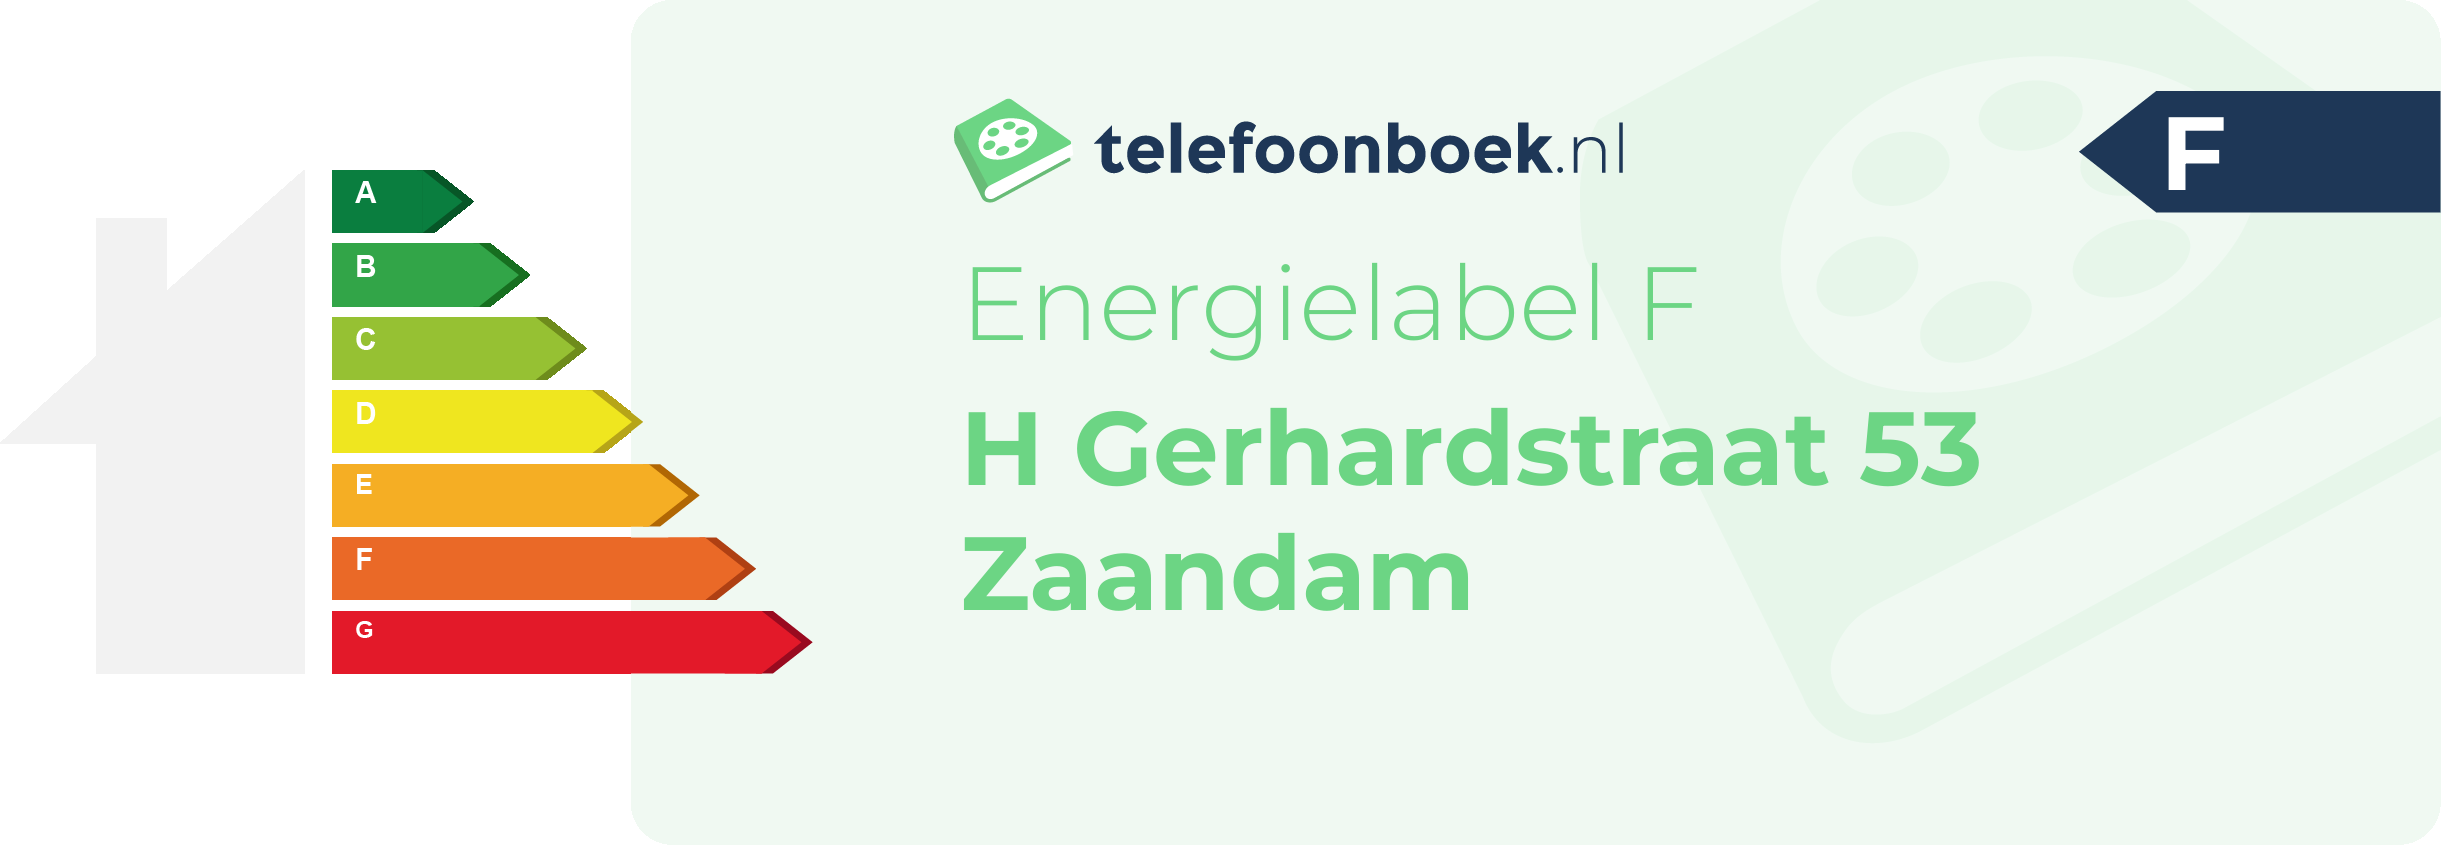 Energielabel H Gerhardstraat 53 Zaandam